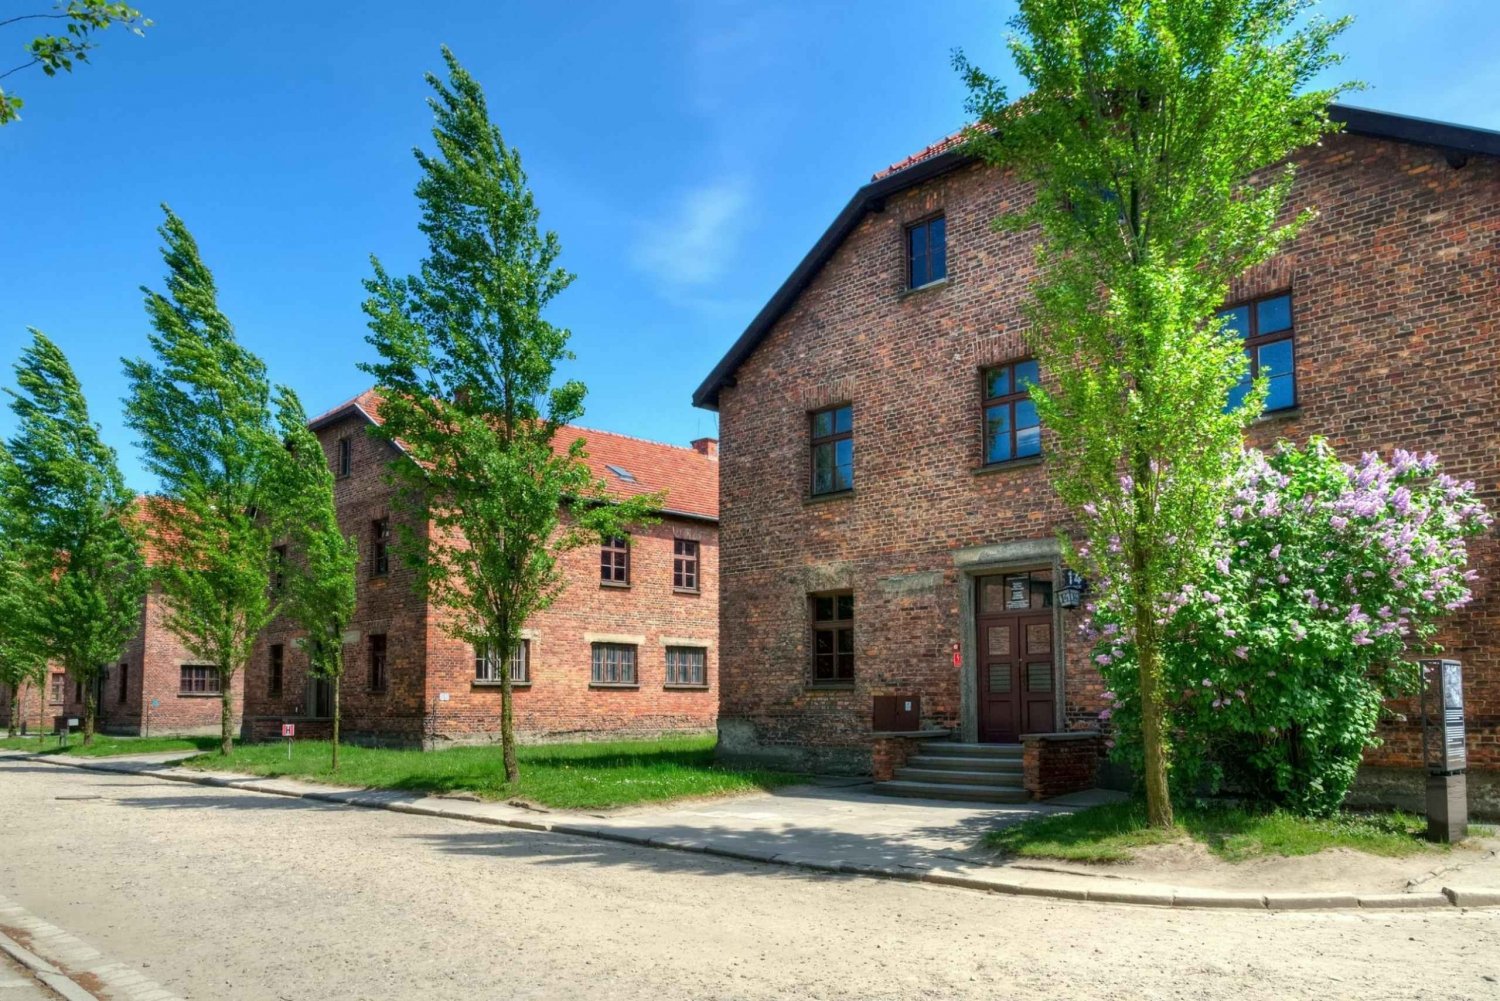 Krakow: Wieliczka Salt Mine and Auschwitz-Birkenau Tour